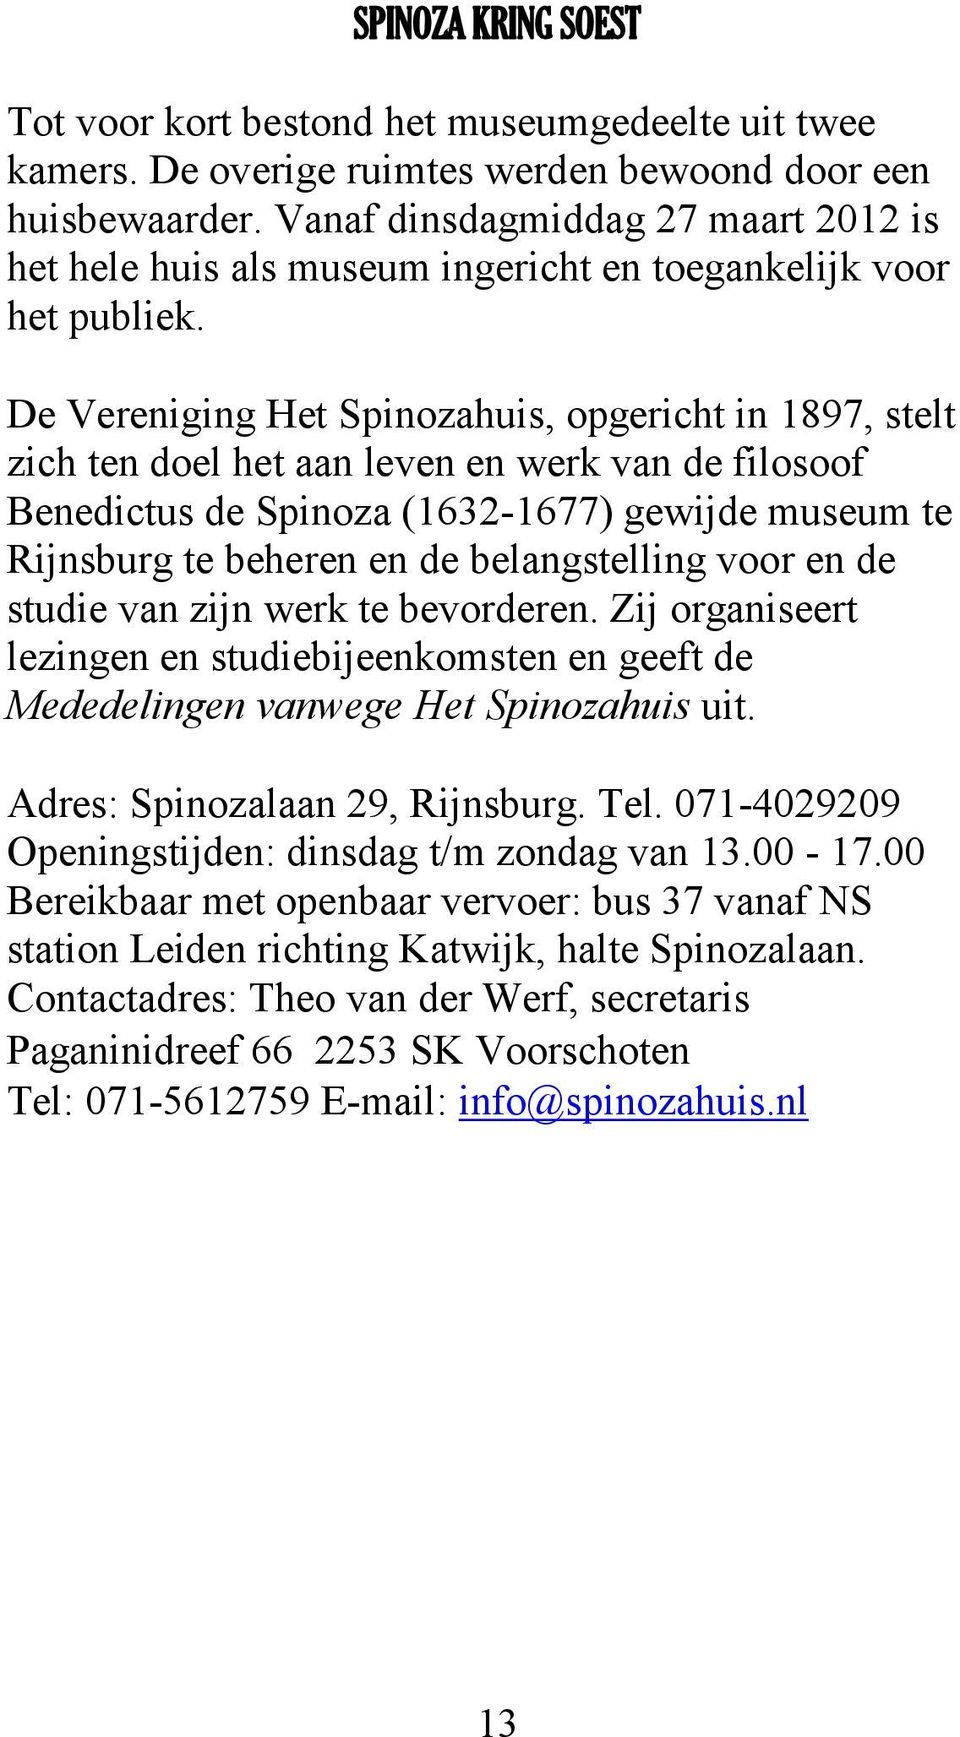 De Vereniging Het Spinozahuis, opgericht in 1897, stelt zich ten doel het aan leven en werk van de filosoof Benedictus de Spinoza (1632-1677) gewijde museum te Rijnsburg te beheren en de